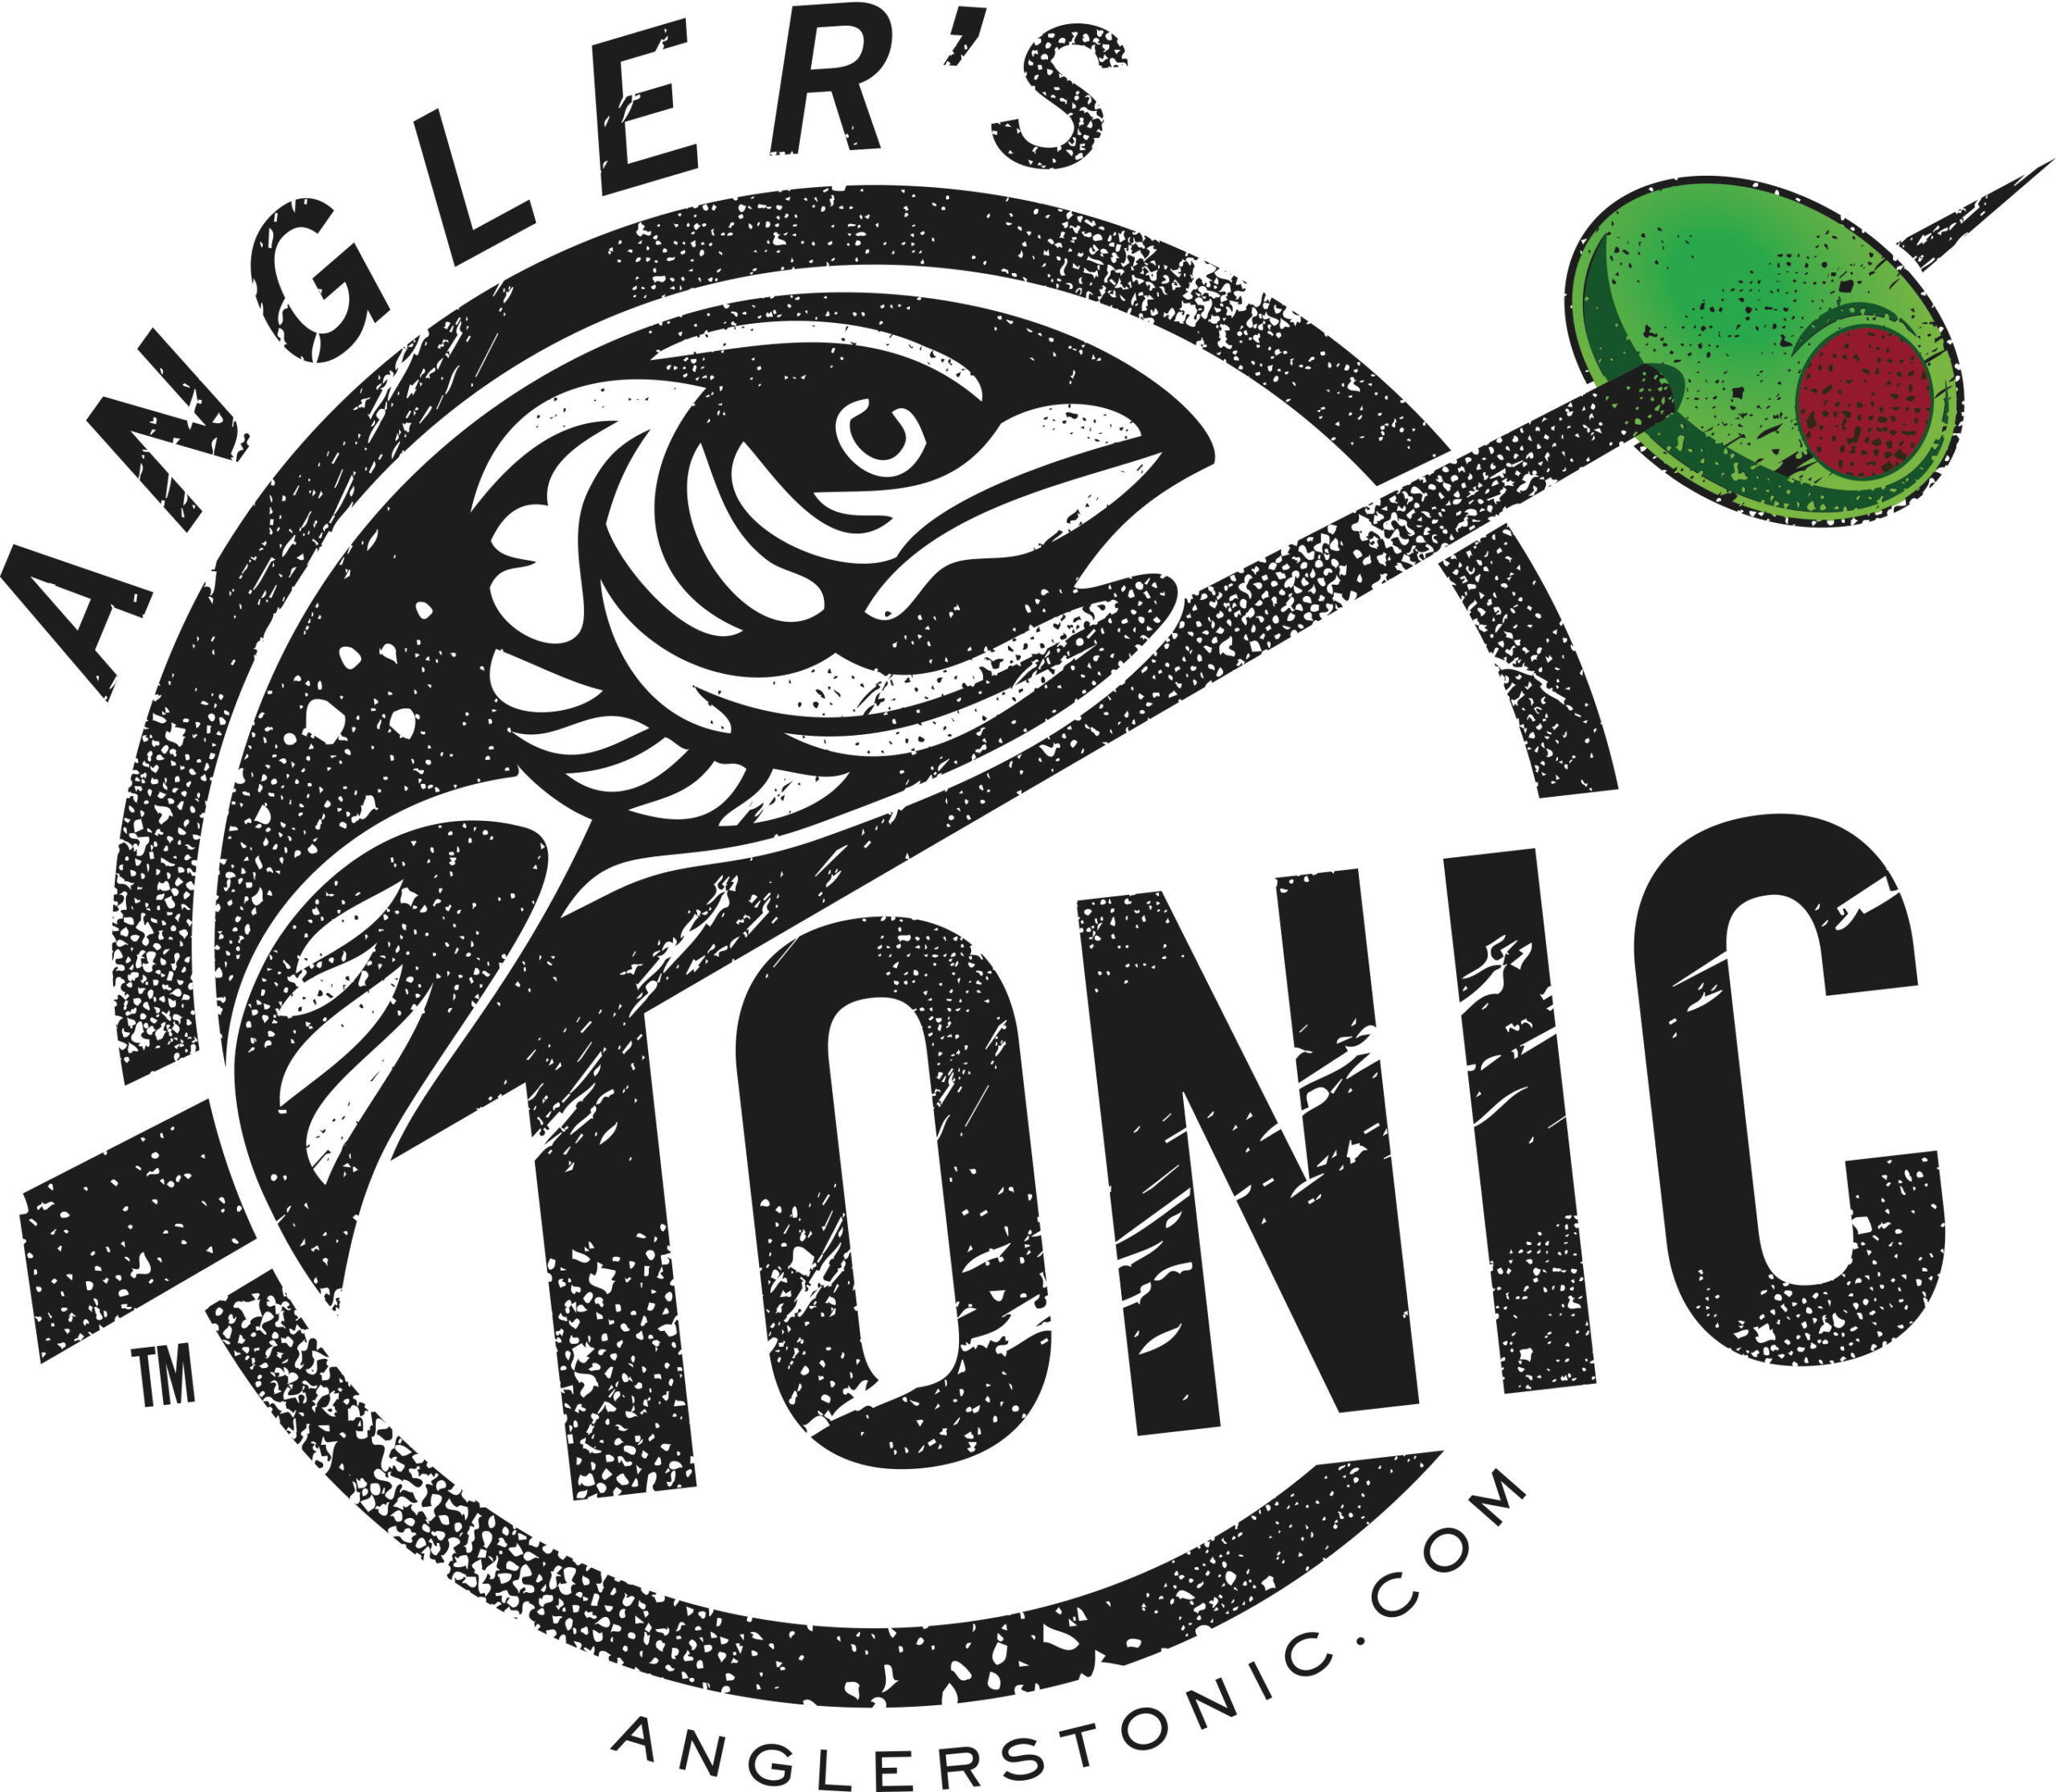 Anglers Tonic